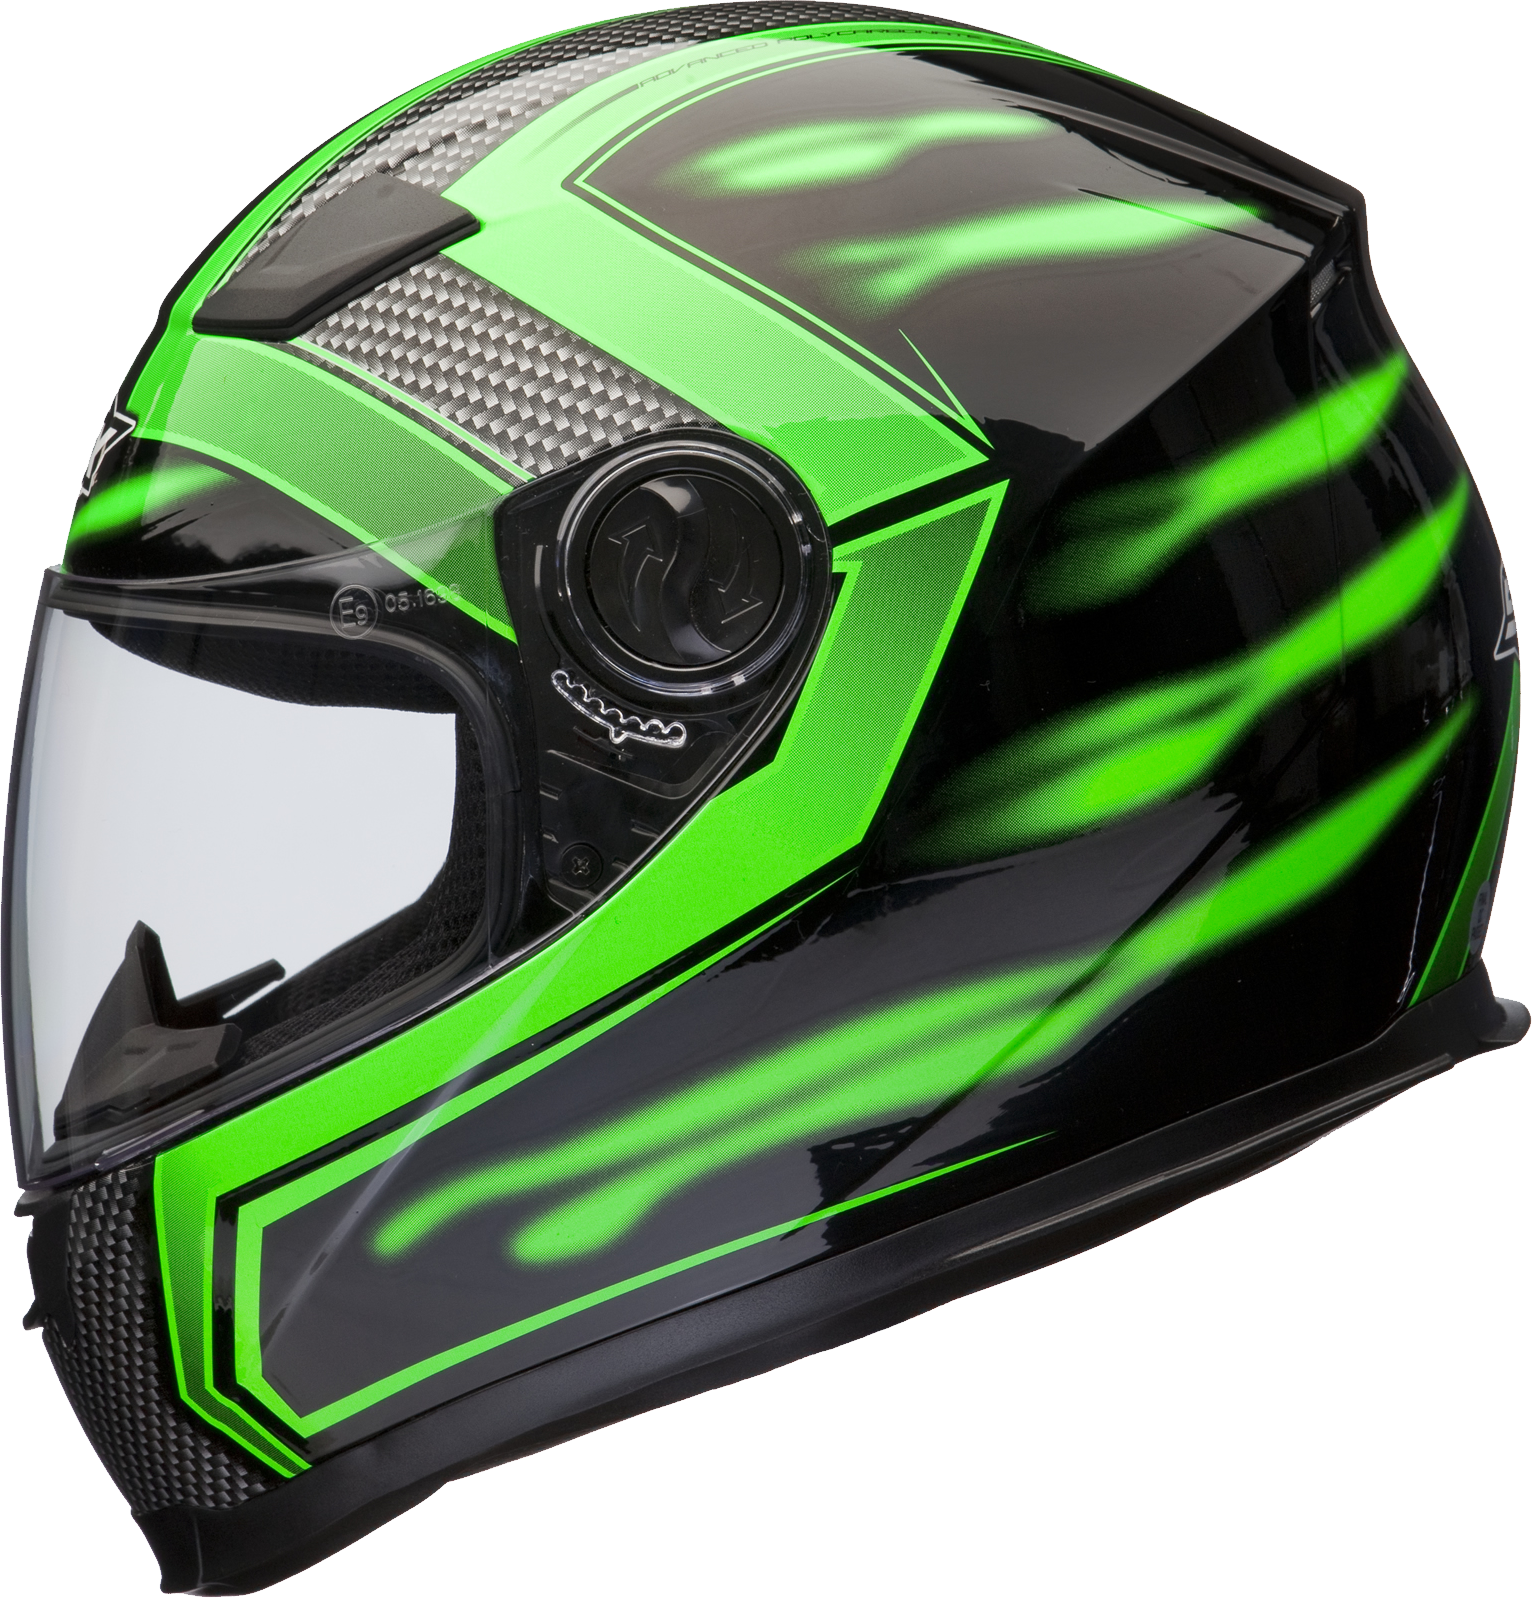 Мотоциклетный шлем PNG фото